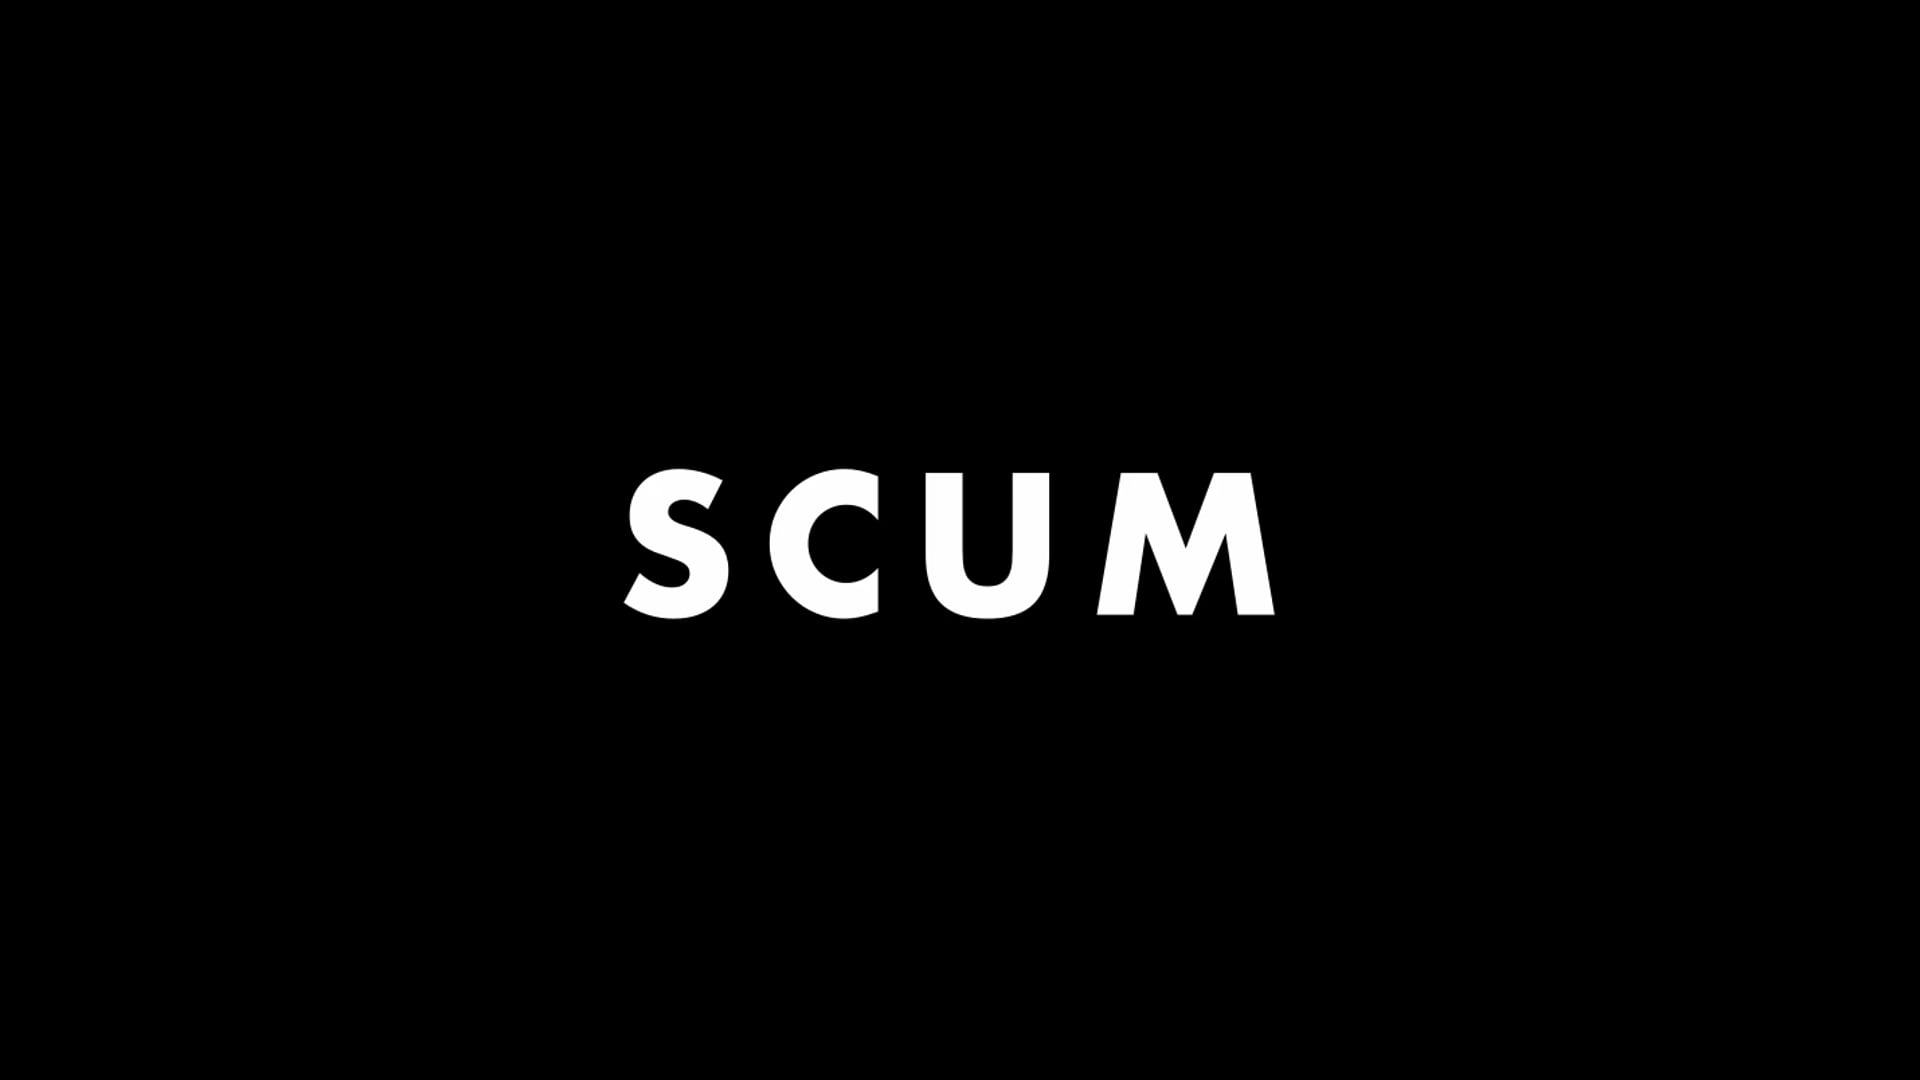 SCUM - Short Film Trailer